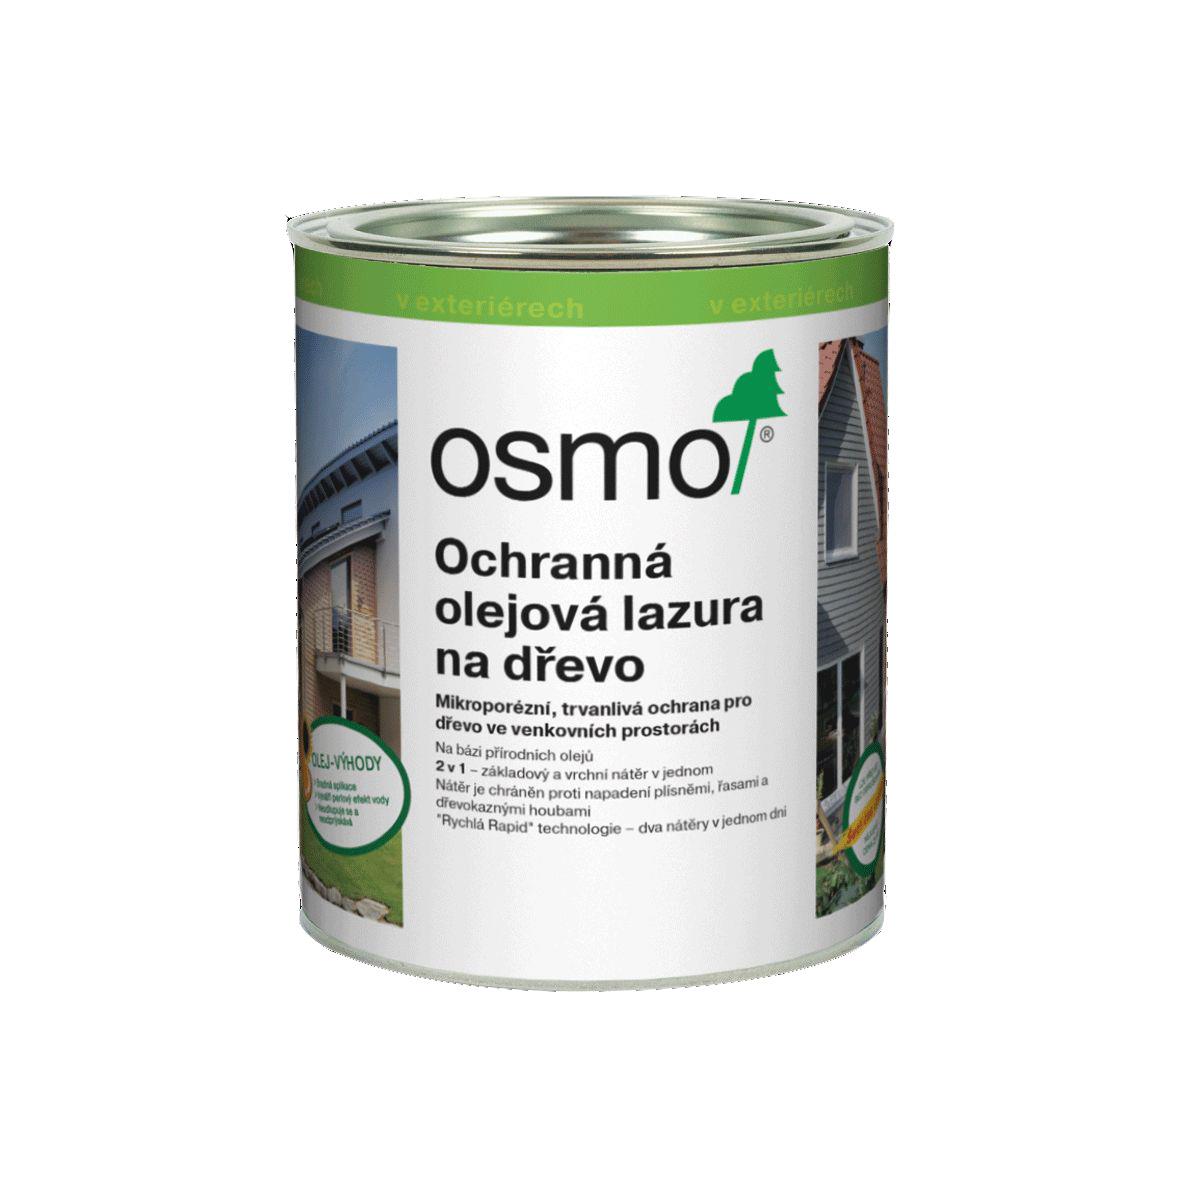 OSMO Ochranná olejová lazura 905 patina 0,75l